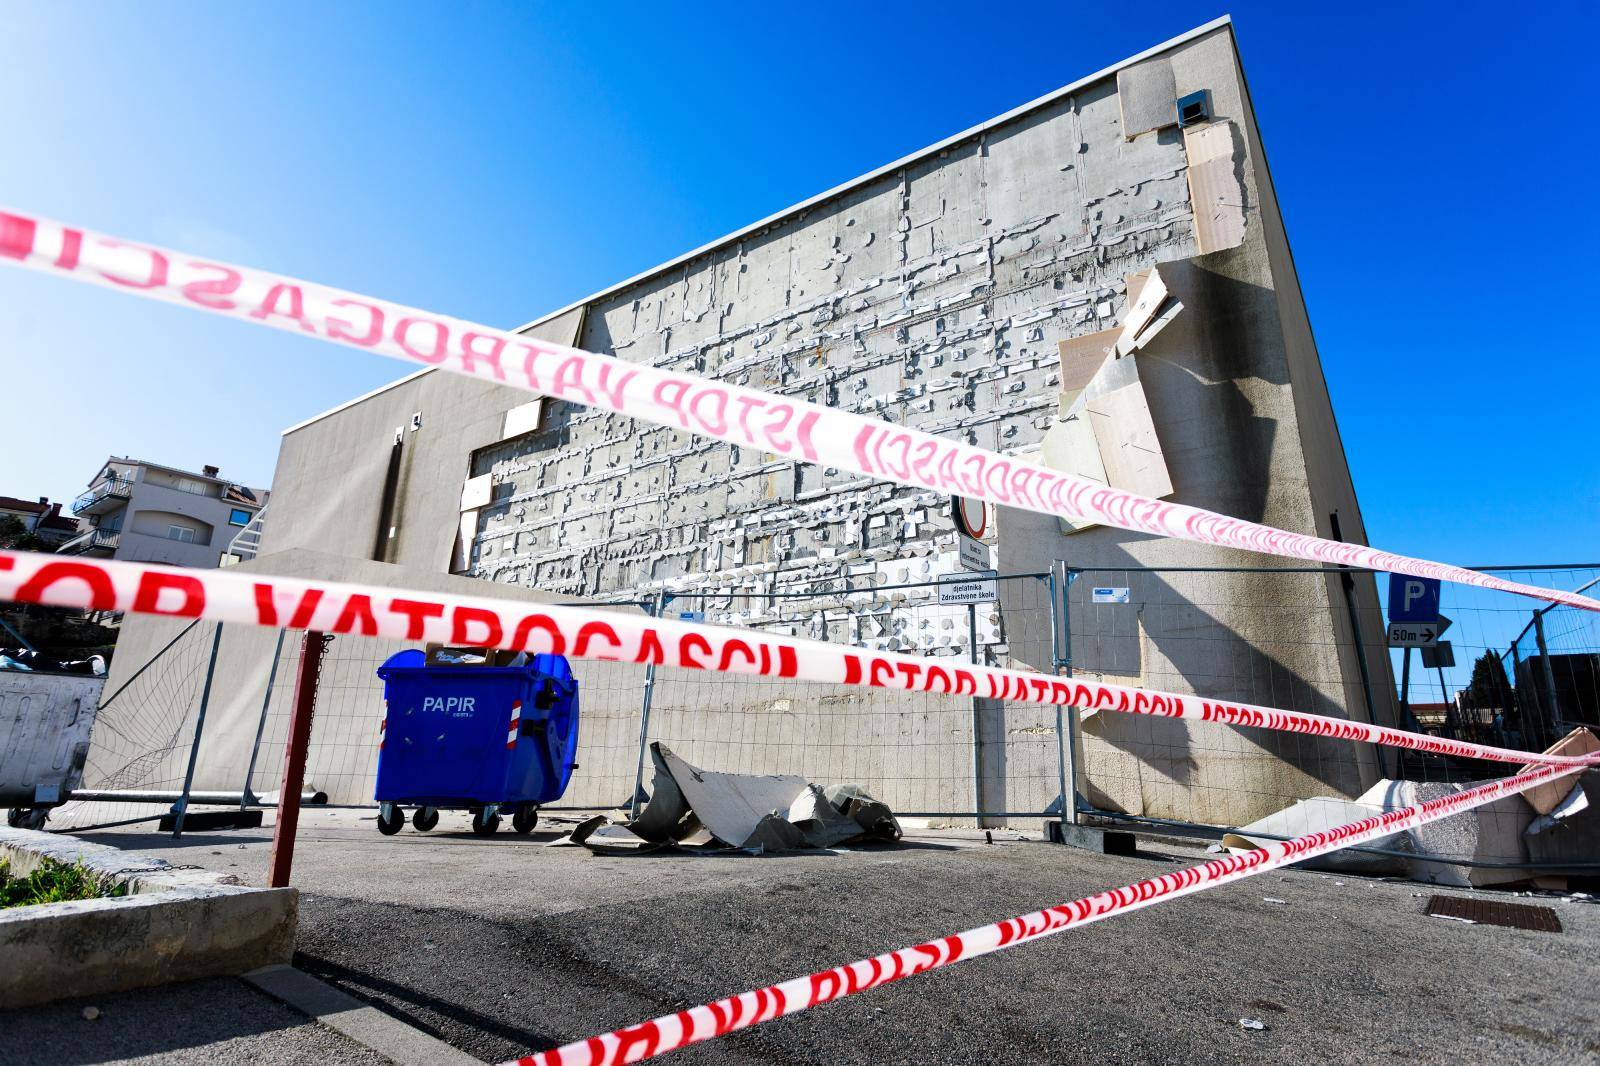 Fasada Zdravstvene škole u Splitu uništena od jakog vjetra